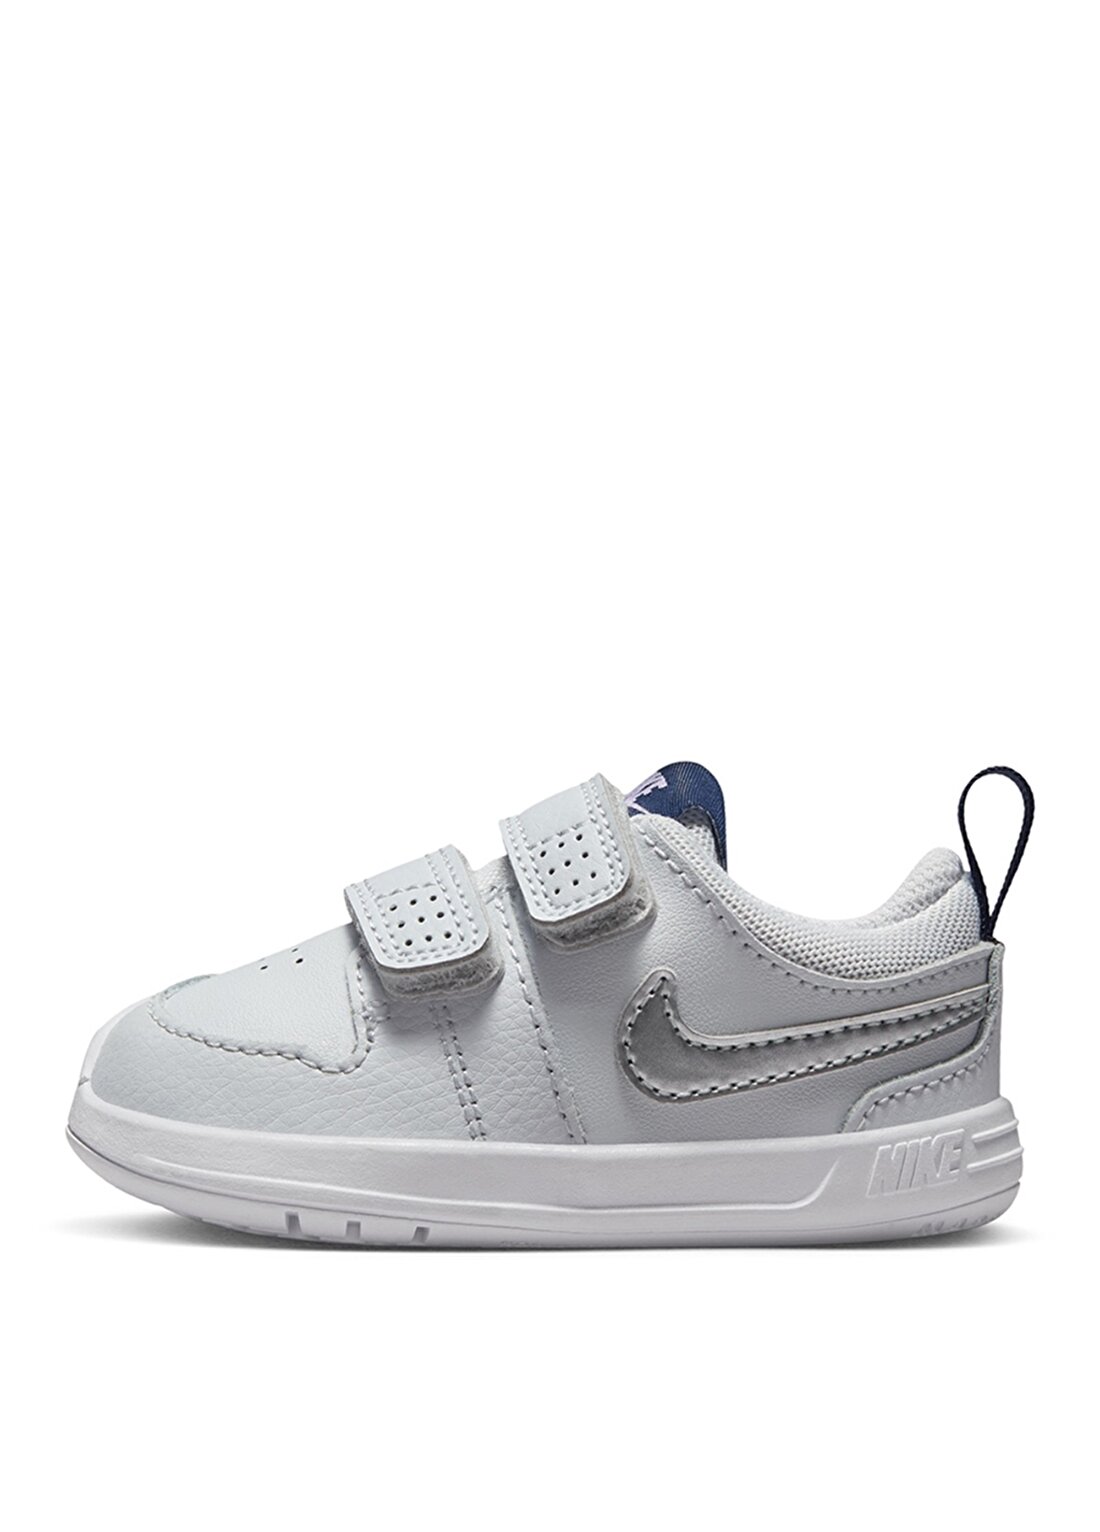 Nike Siyah - Gri - Gümüş Erkek Bebek Yürüyüş Ayakkabısı AR4162-009 NIKE PICO 5 (TDV)